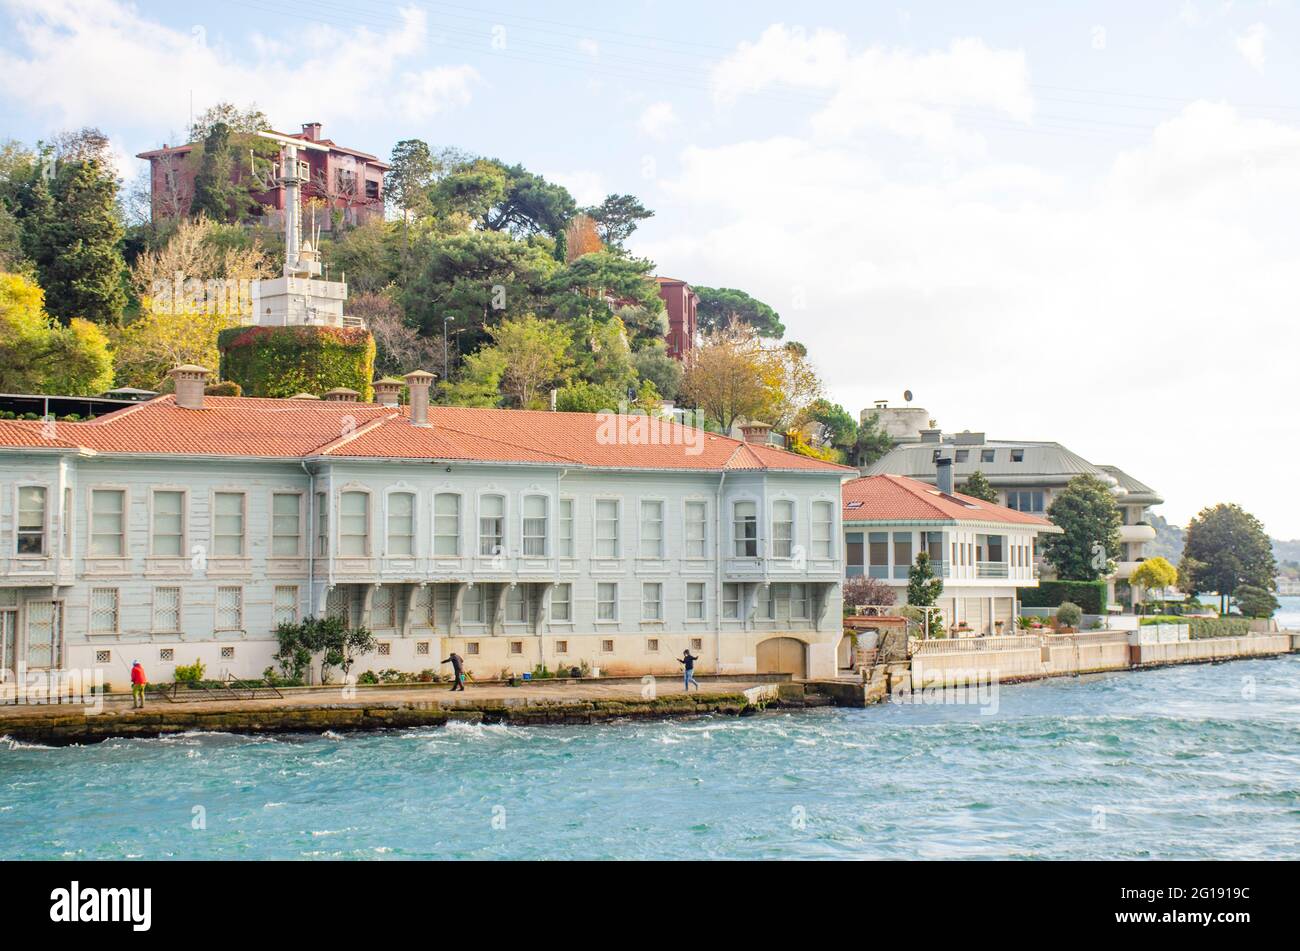 Sites de la Turquie sur le bord de mer à Istanbul Banque D'Images